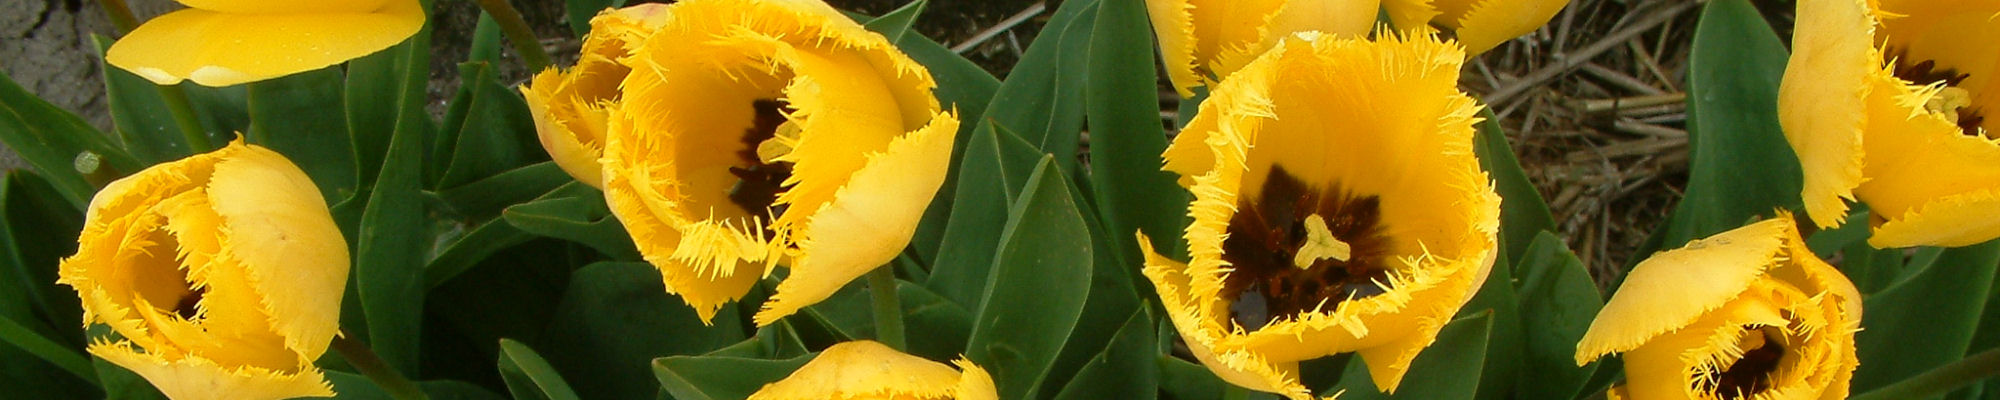 images/slides/keukenhof-spring-flowers.jpg